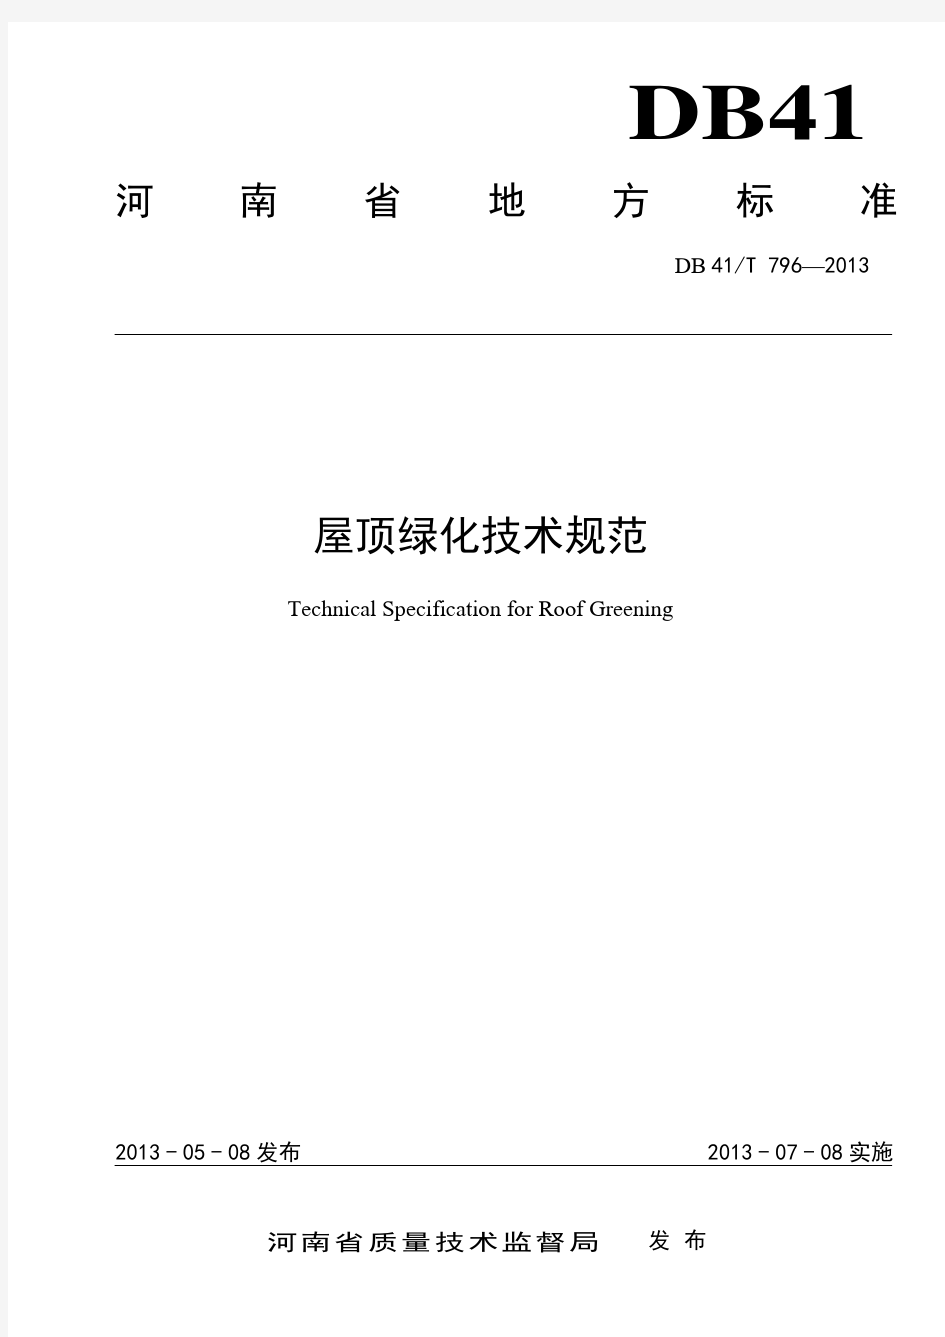 02河南省屋顶绿化技术规范2013.05.23(最终定稿)2013.05.23